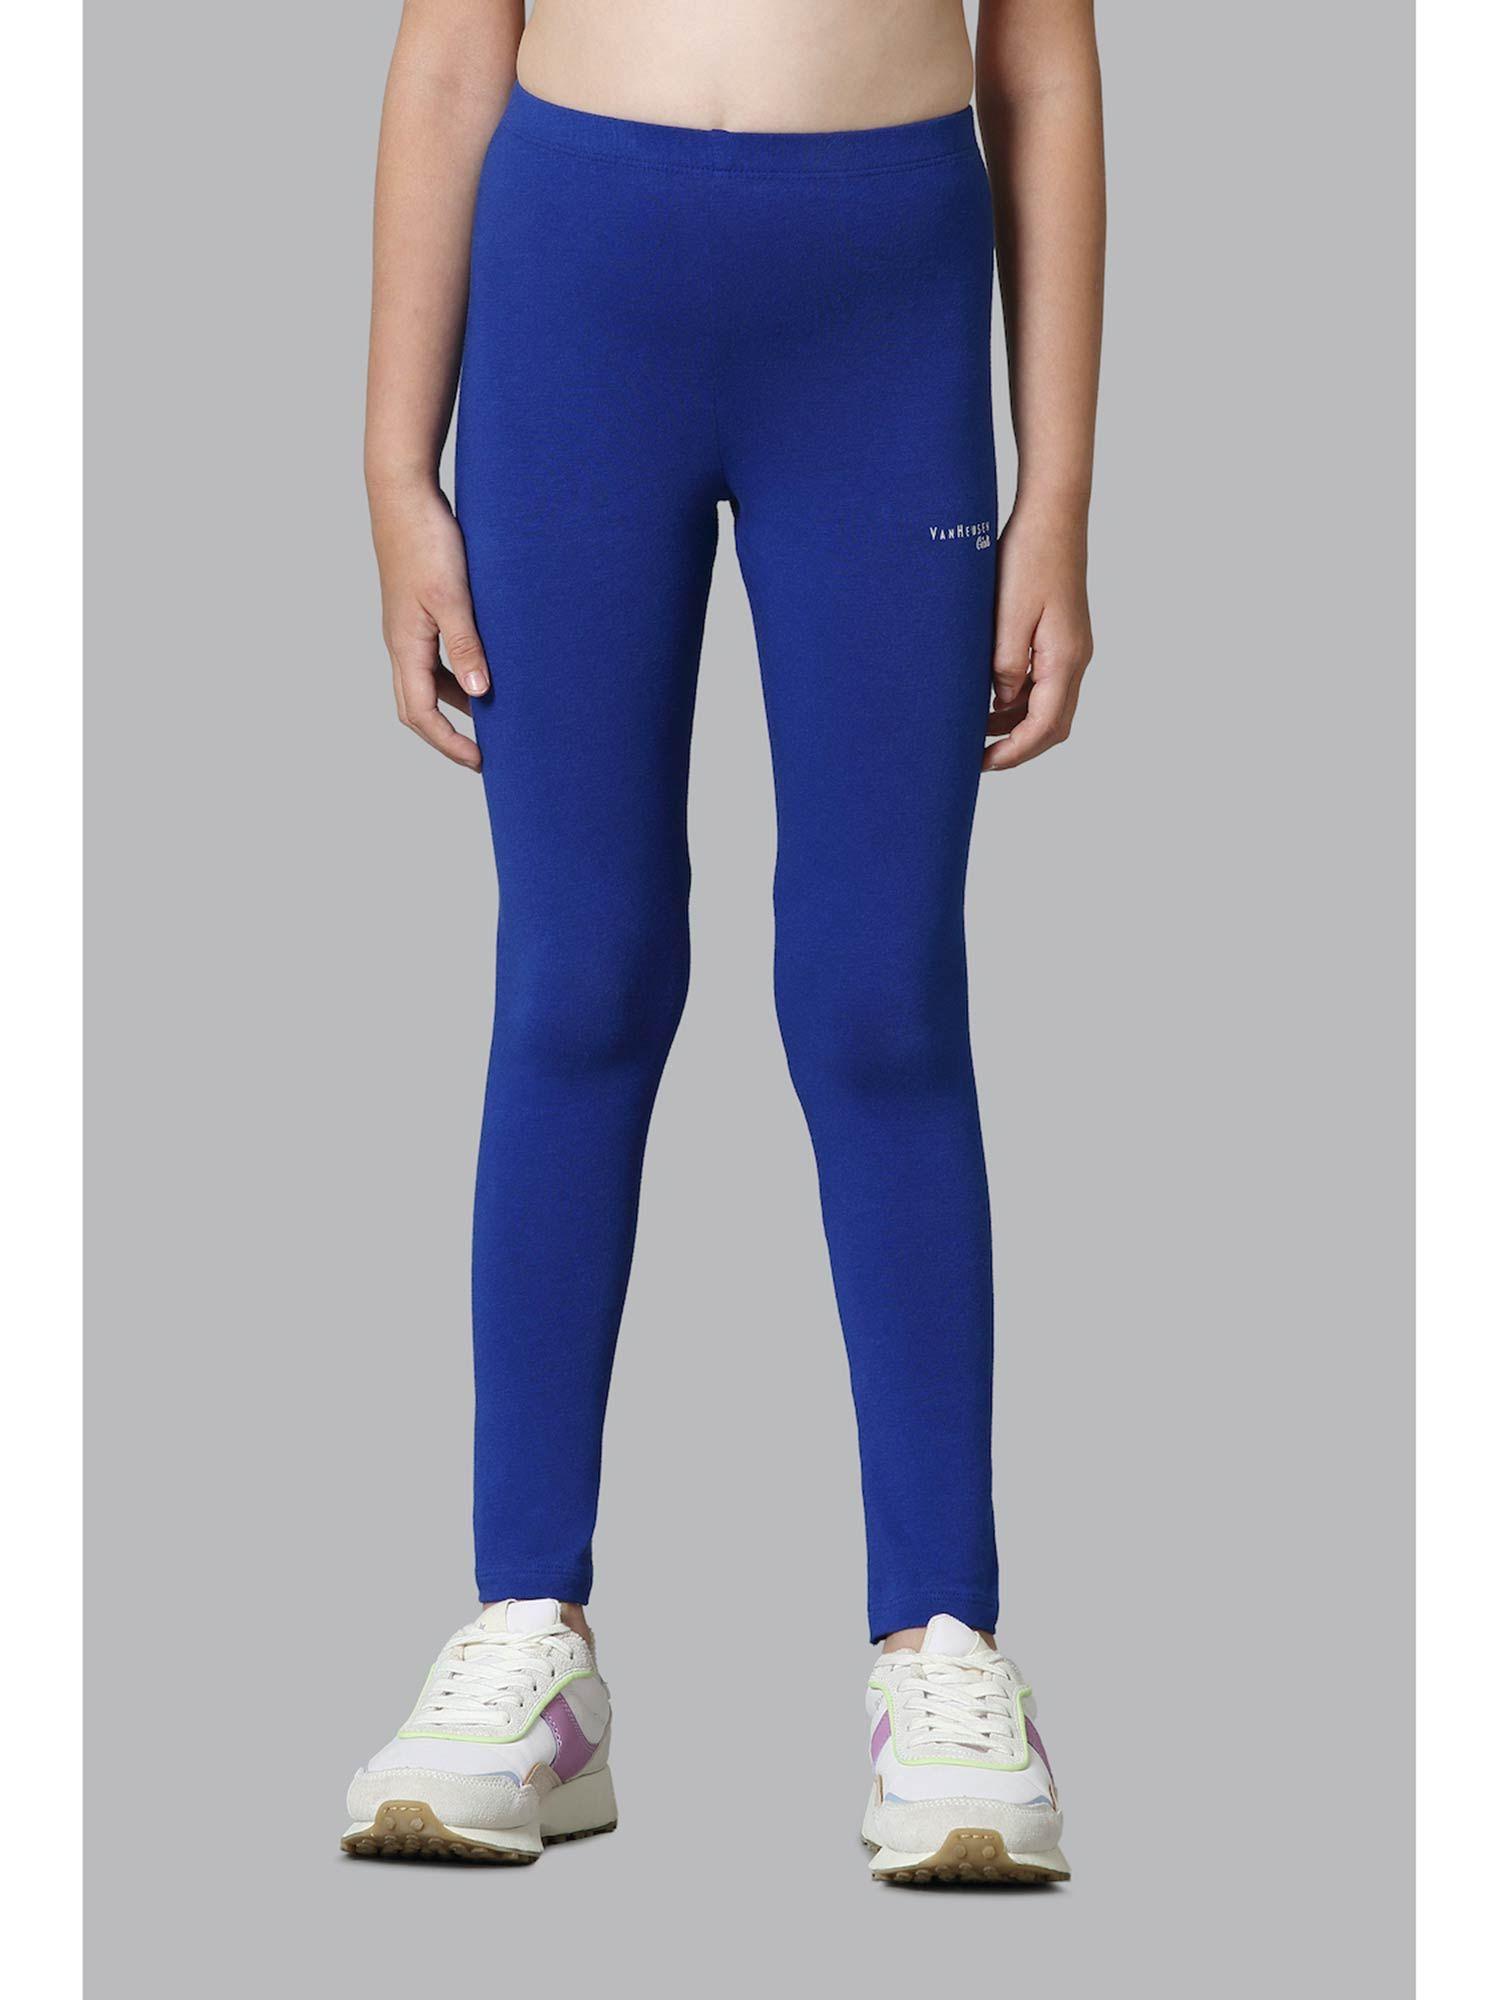 girls power plus & super soft leggings - sodalite blue